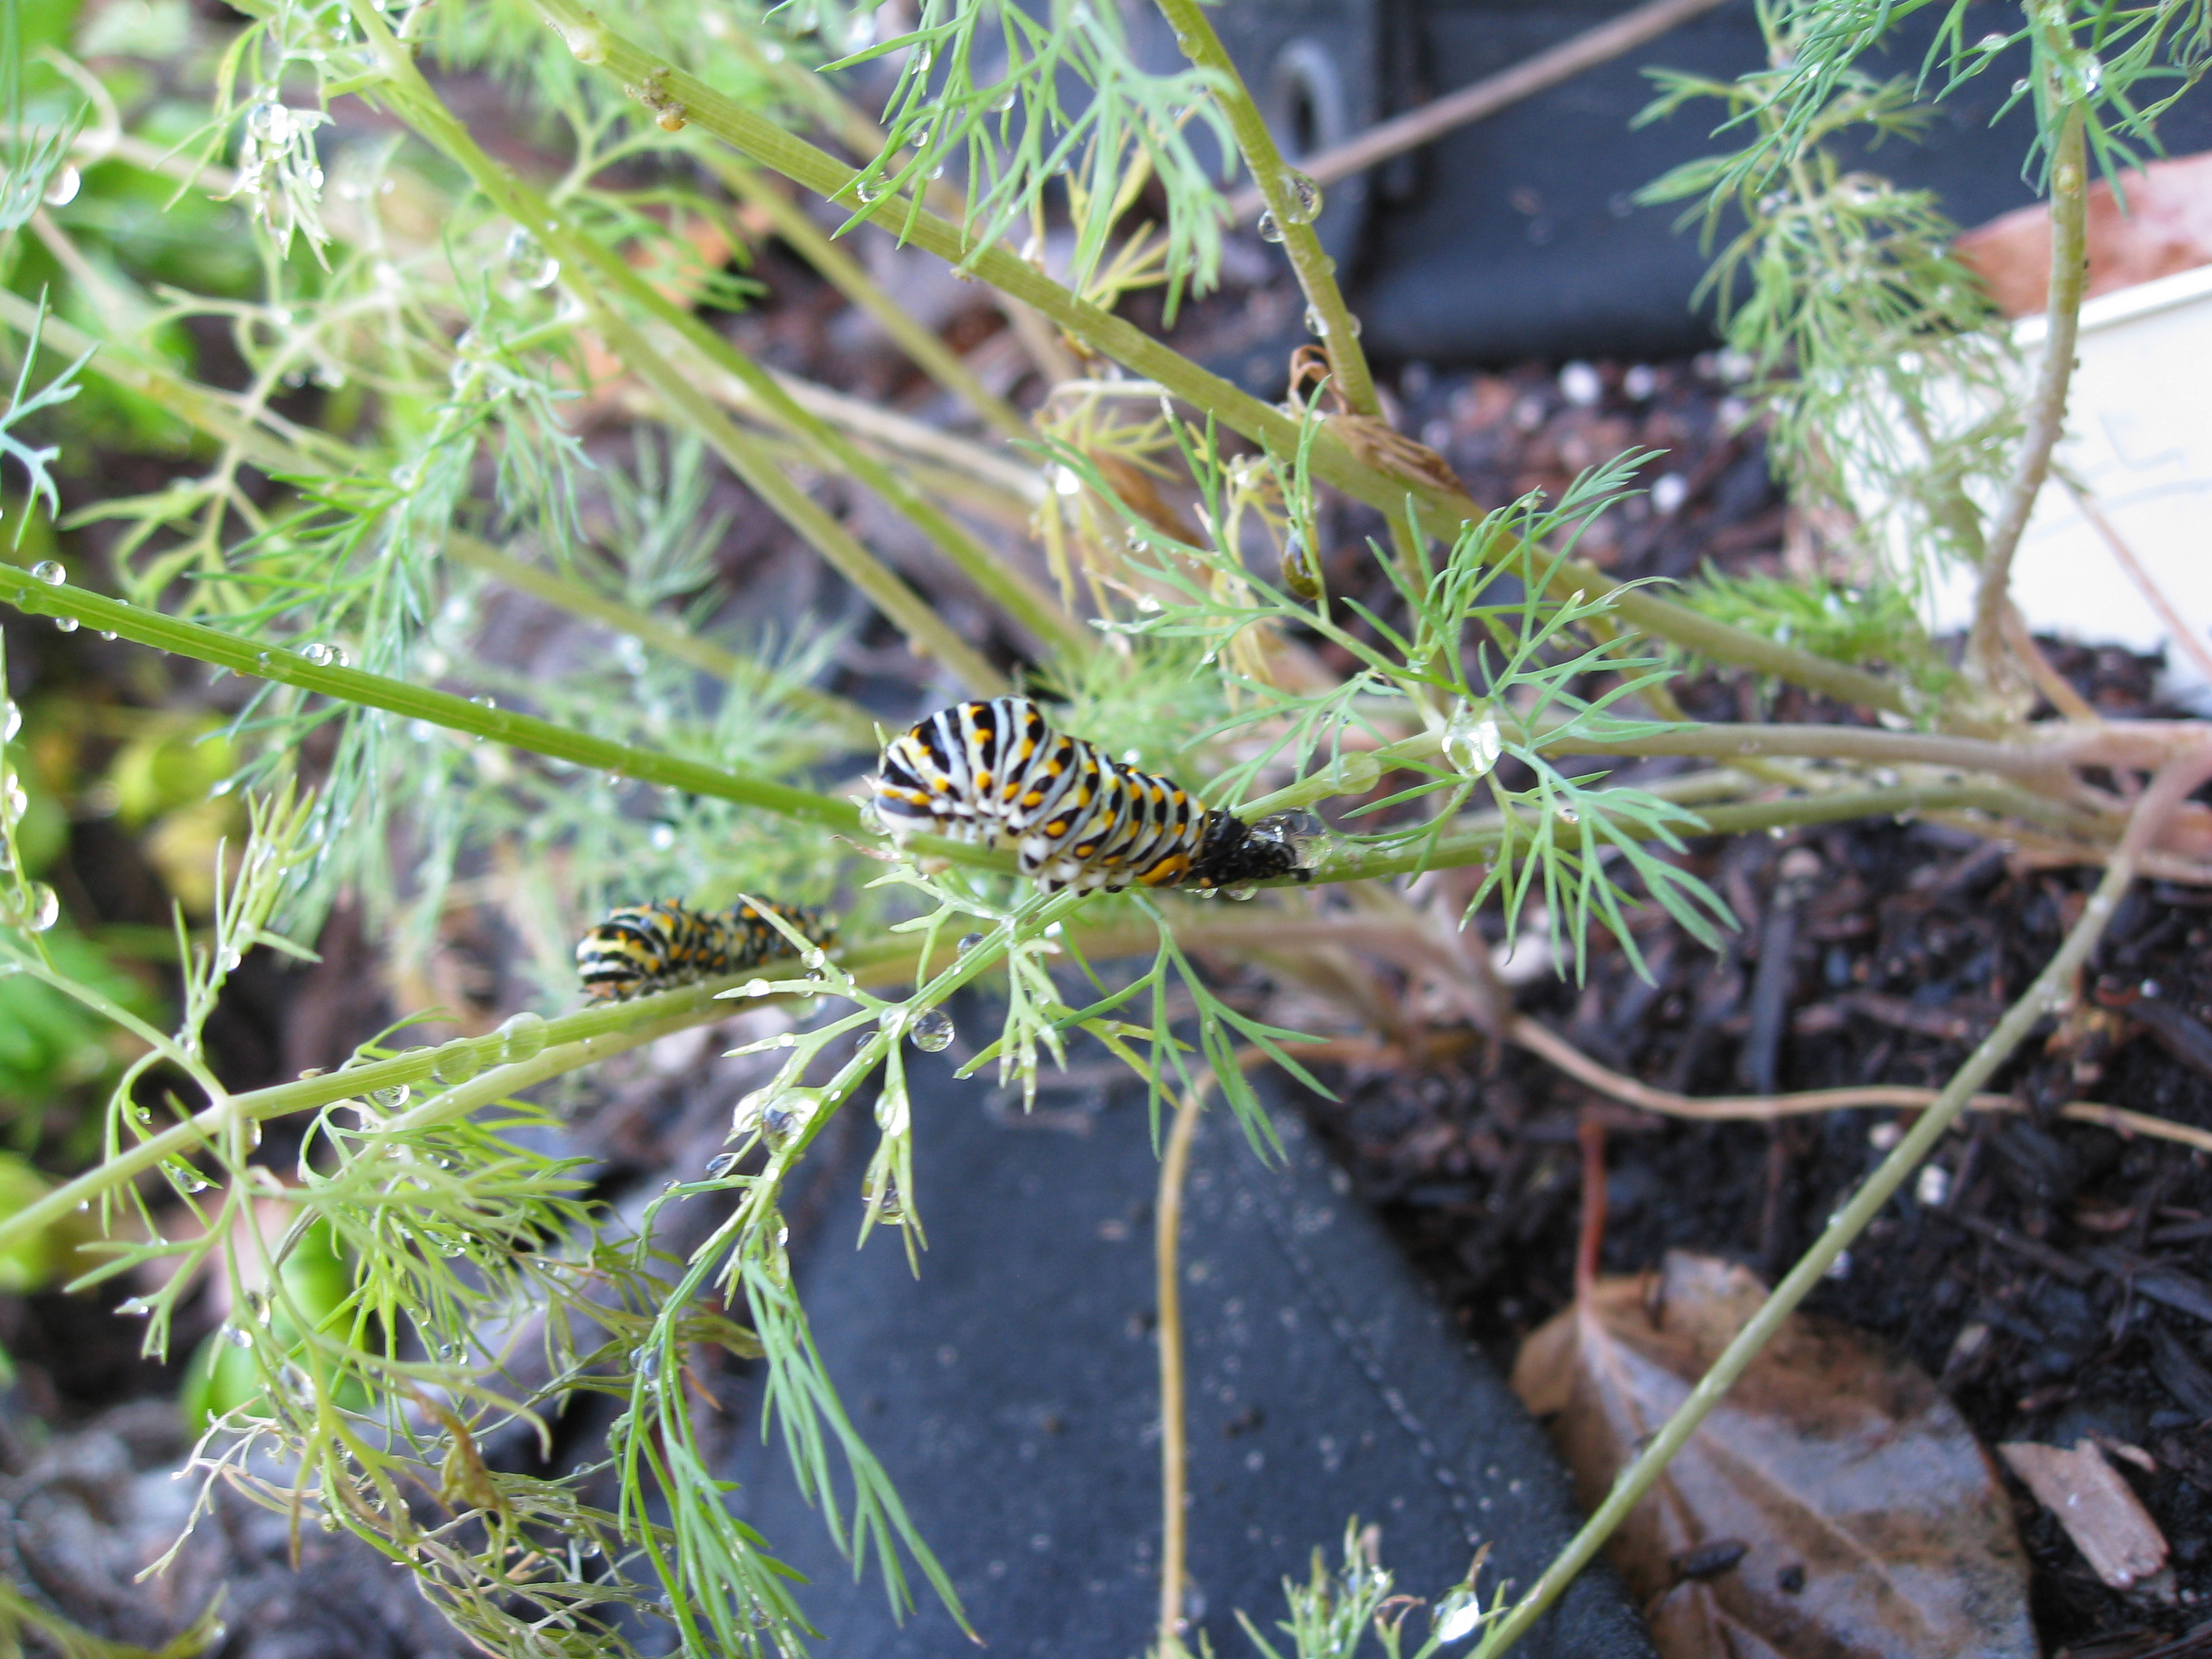 Swallowtail caterpillars on dill